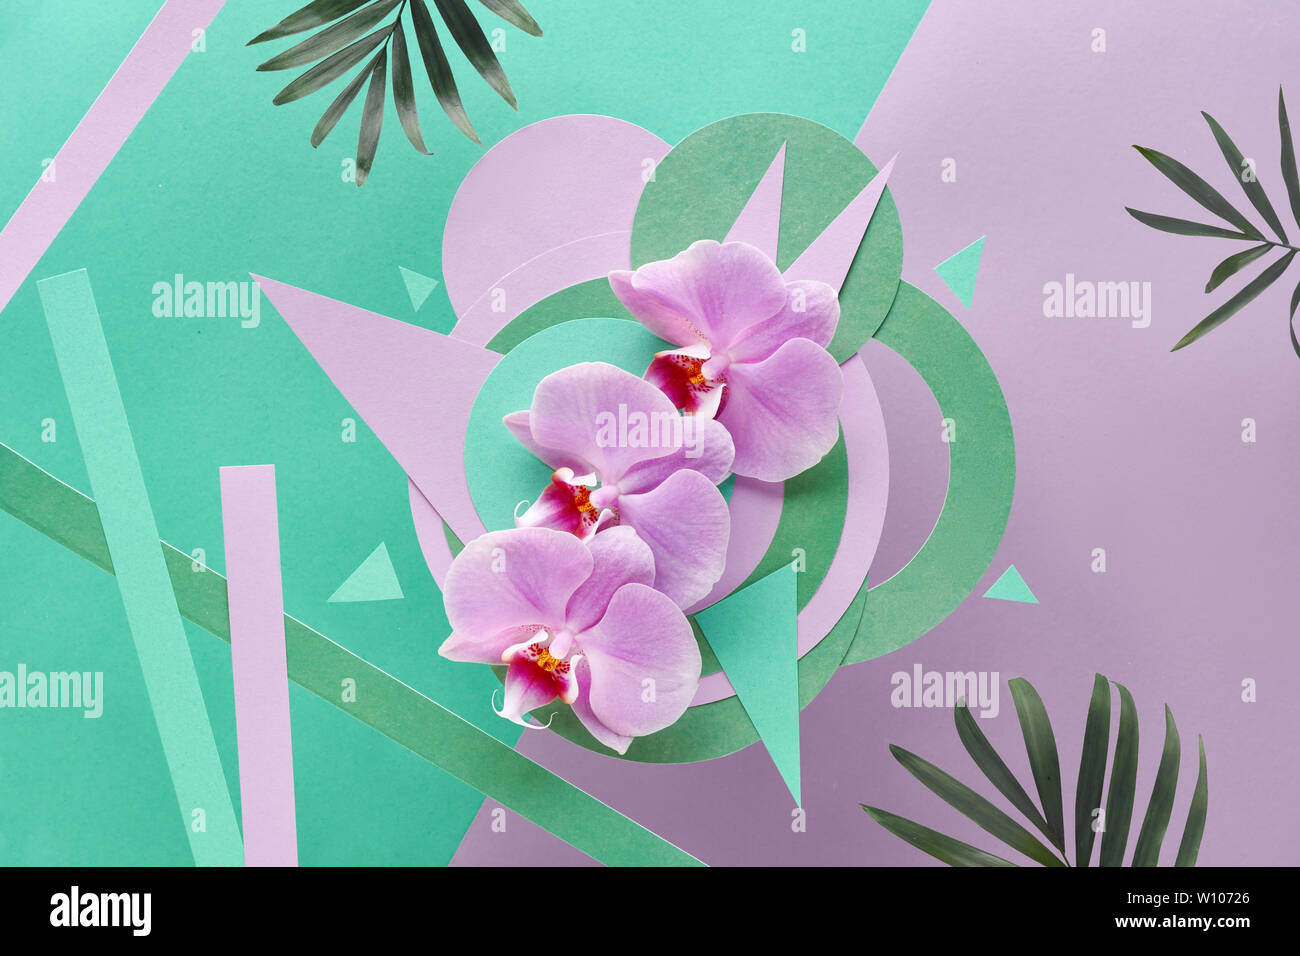 Floral fond de papier monnaie et des couleurs pastel. Fleurs d'orchidée sur fond géométrique Banque D'Images